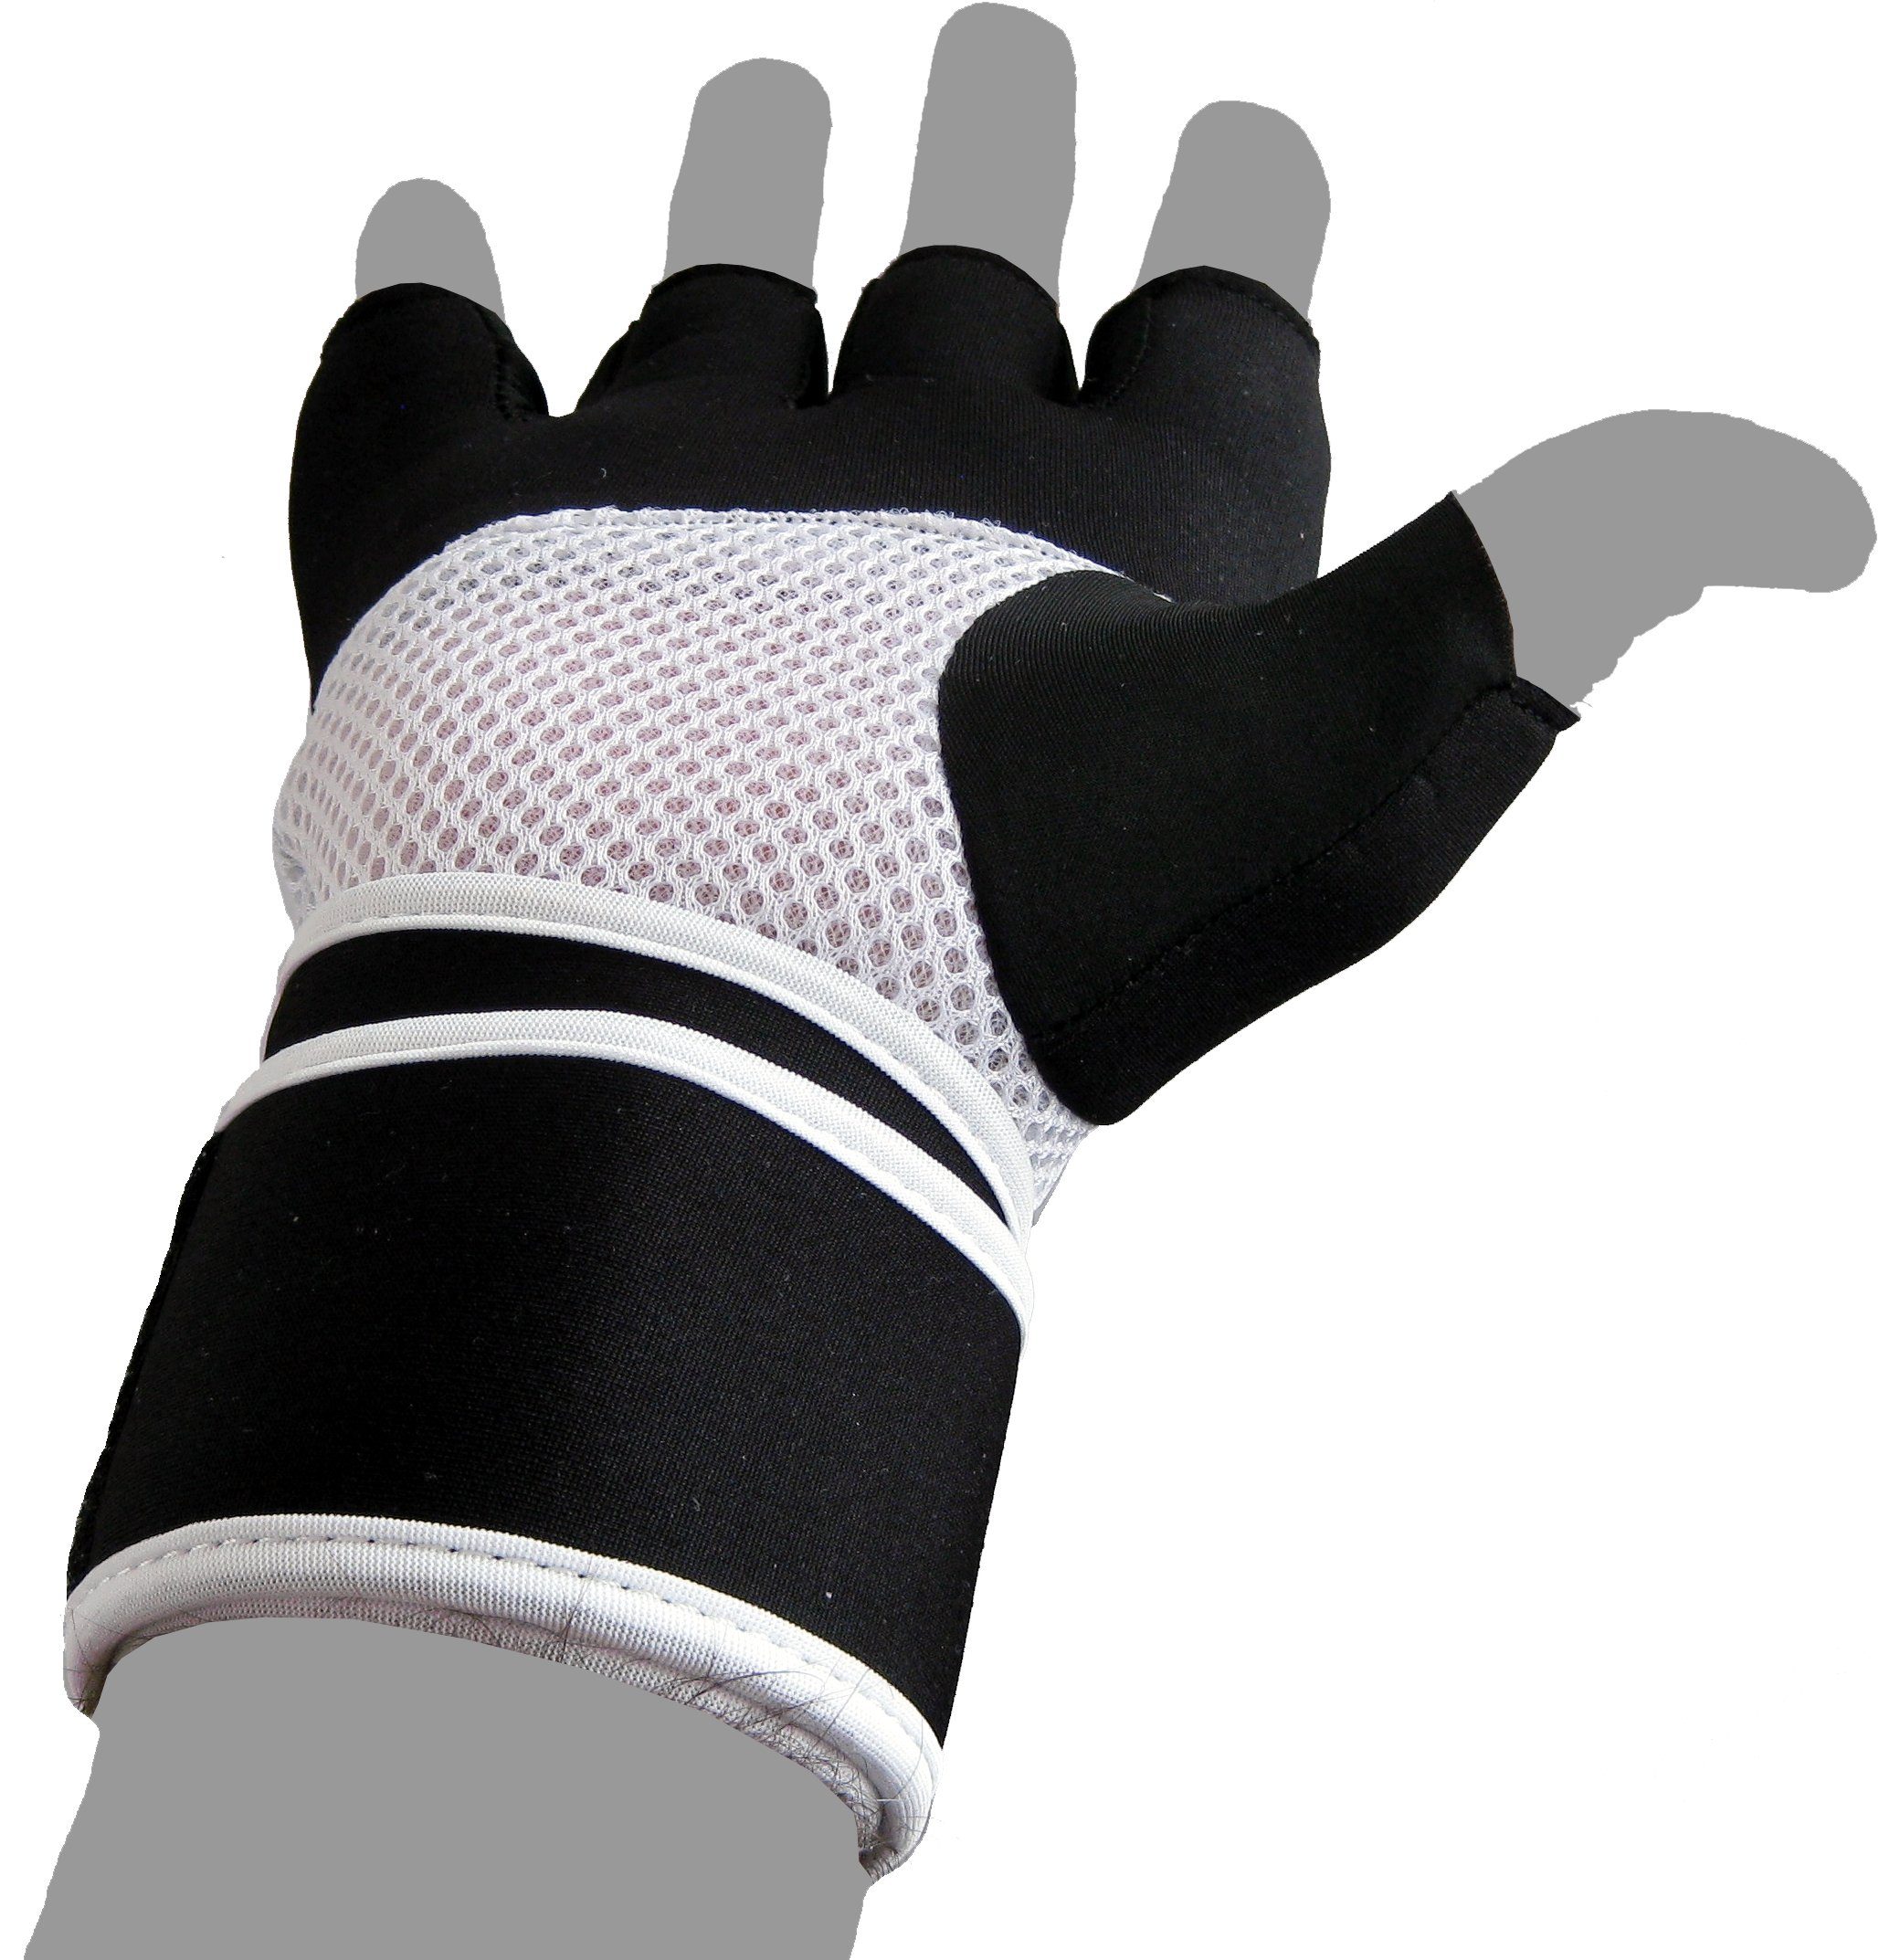 - Erwachsene und Sandsack, XS Boxhandschuhe Neopren Handschuhe Handschutz Kinder Boxsack Winsome BAY-Sports XL